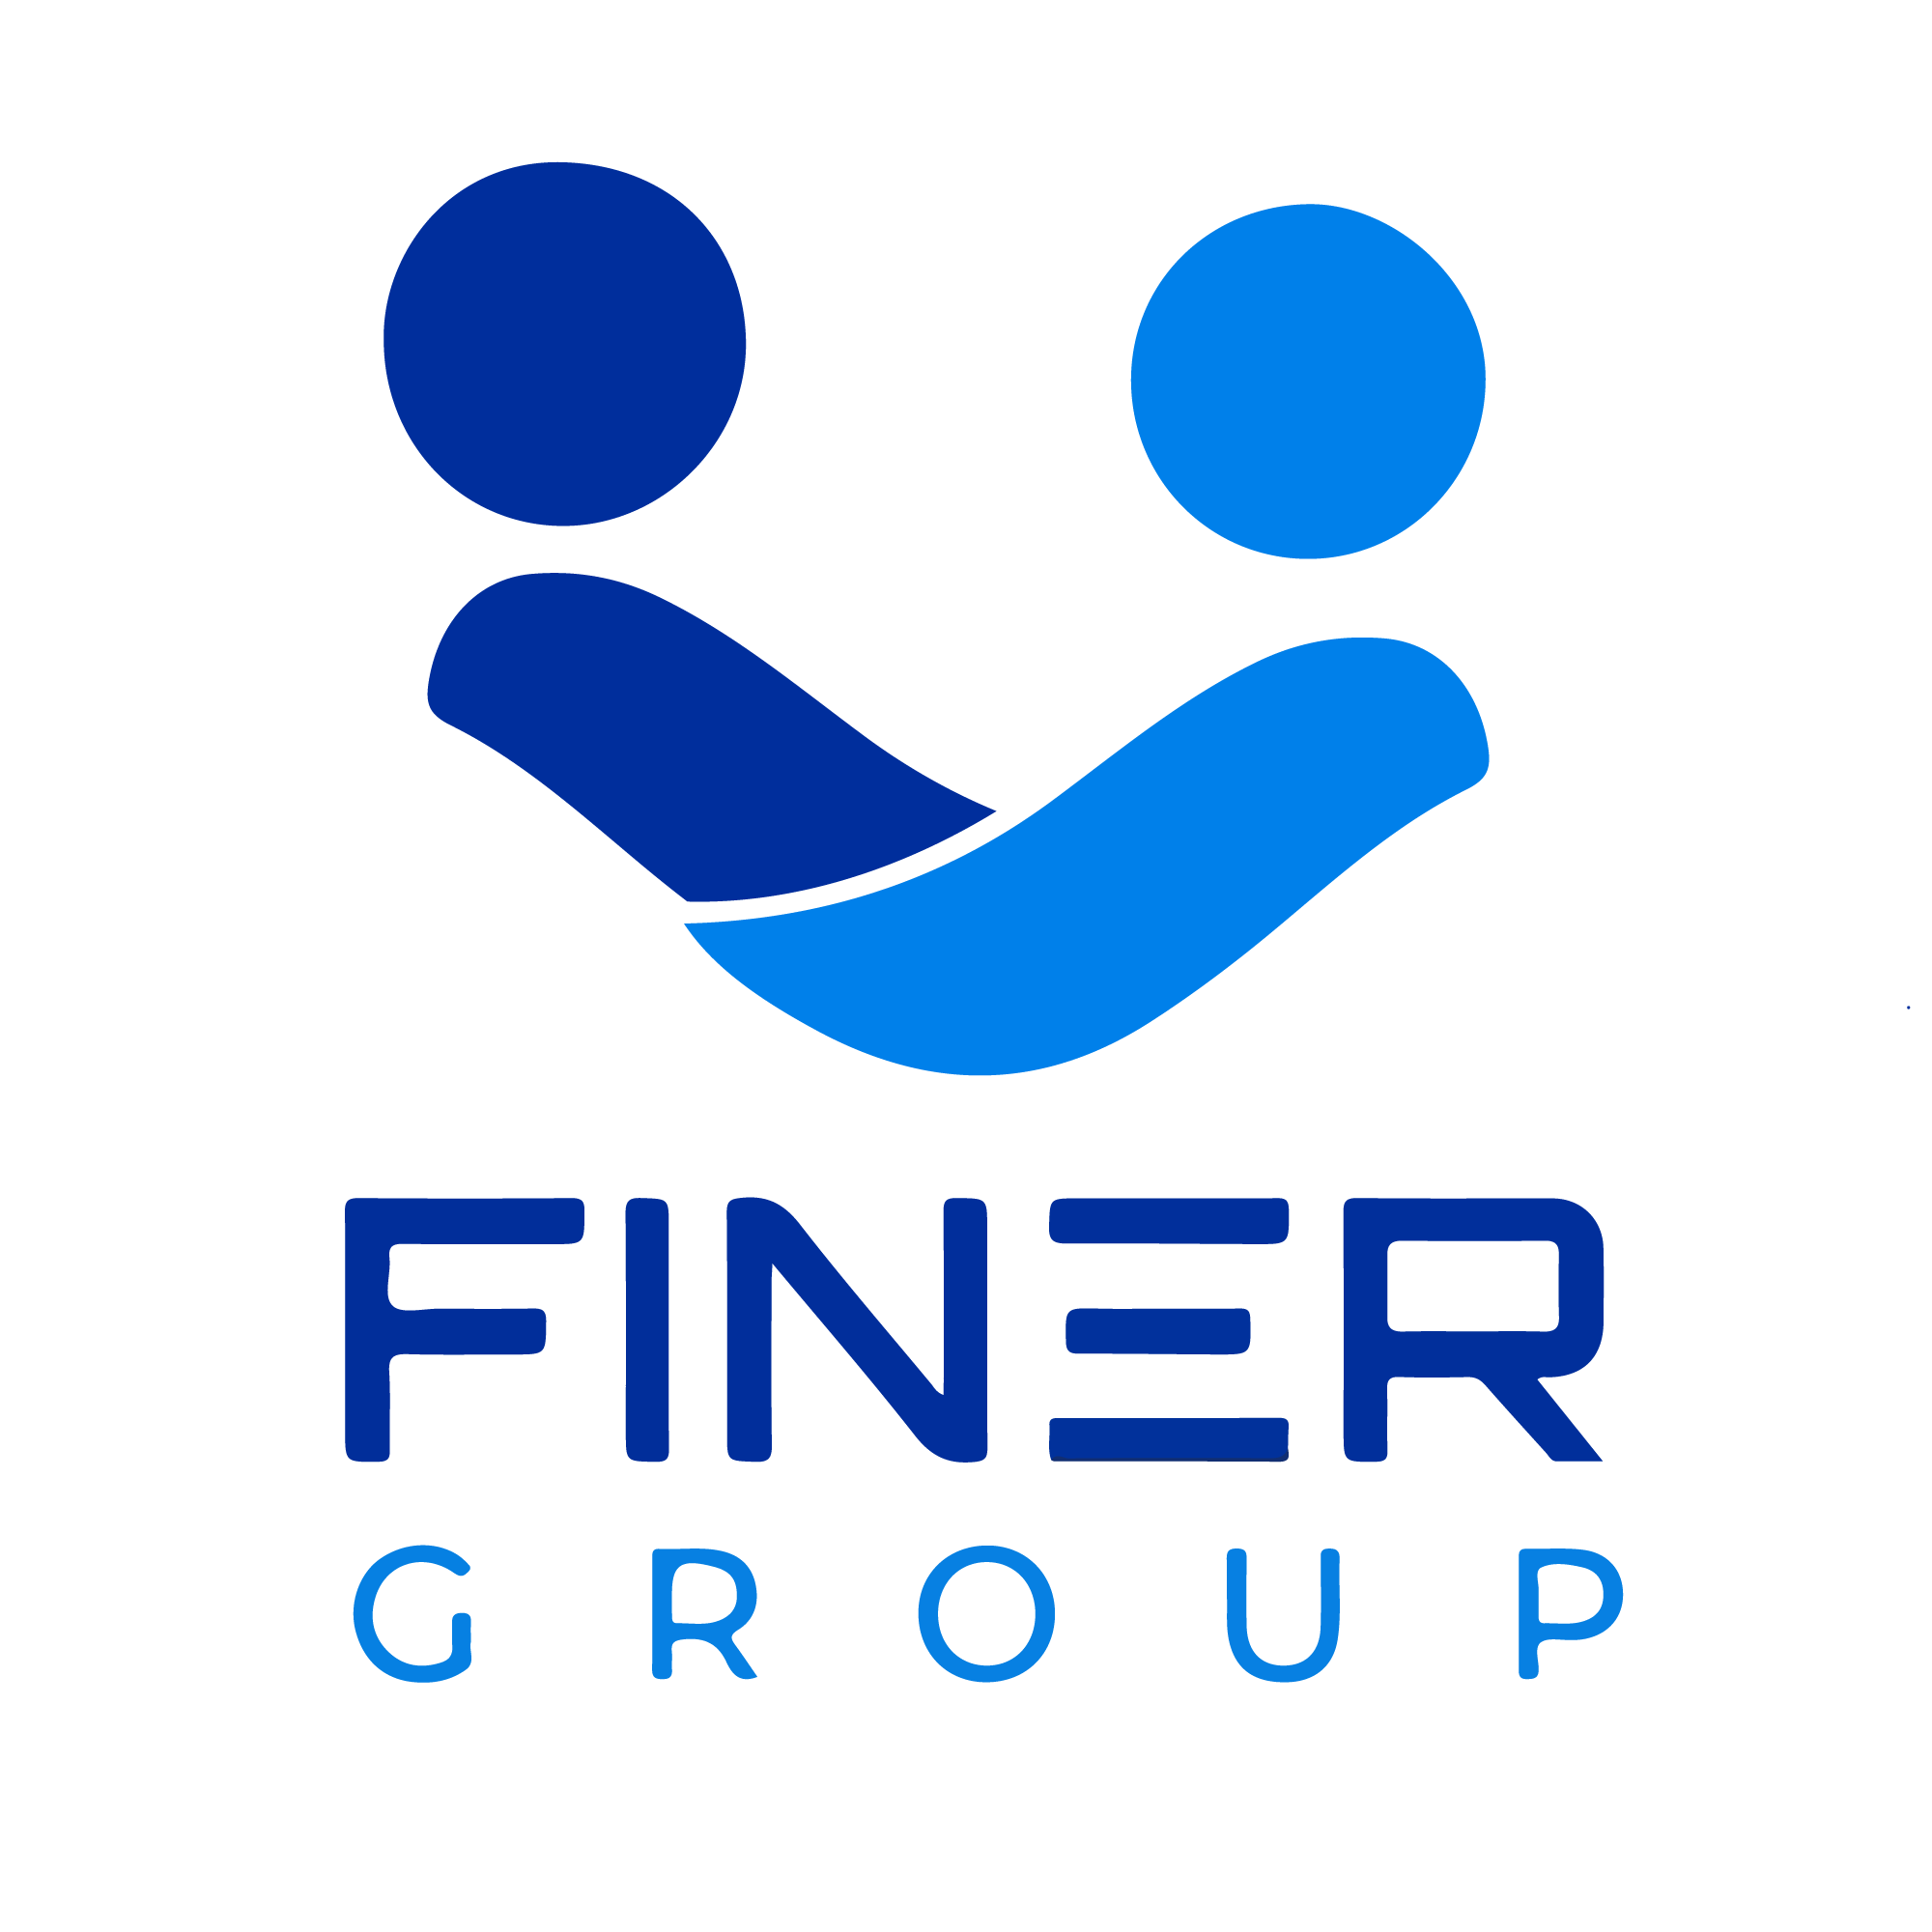 Finer Group